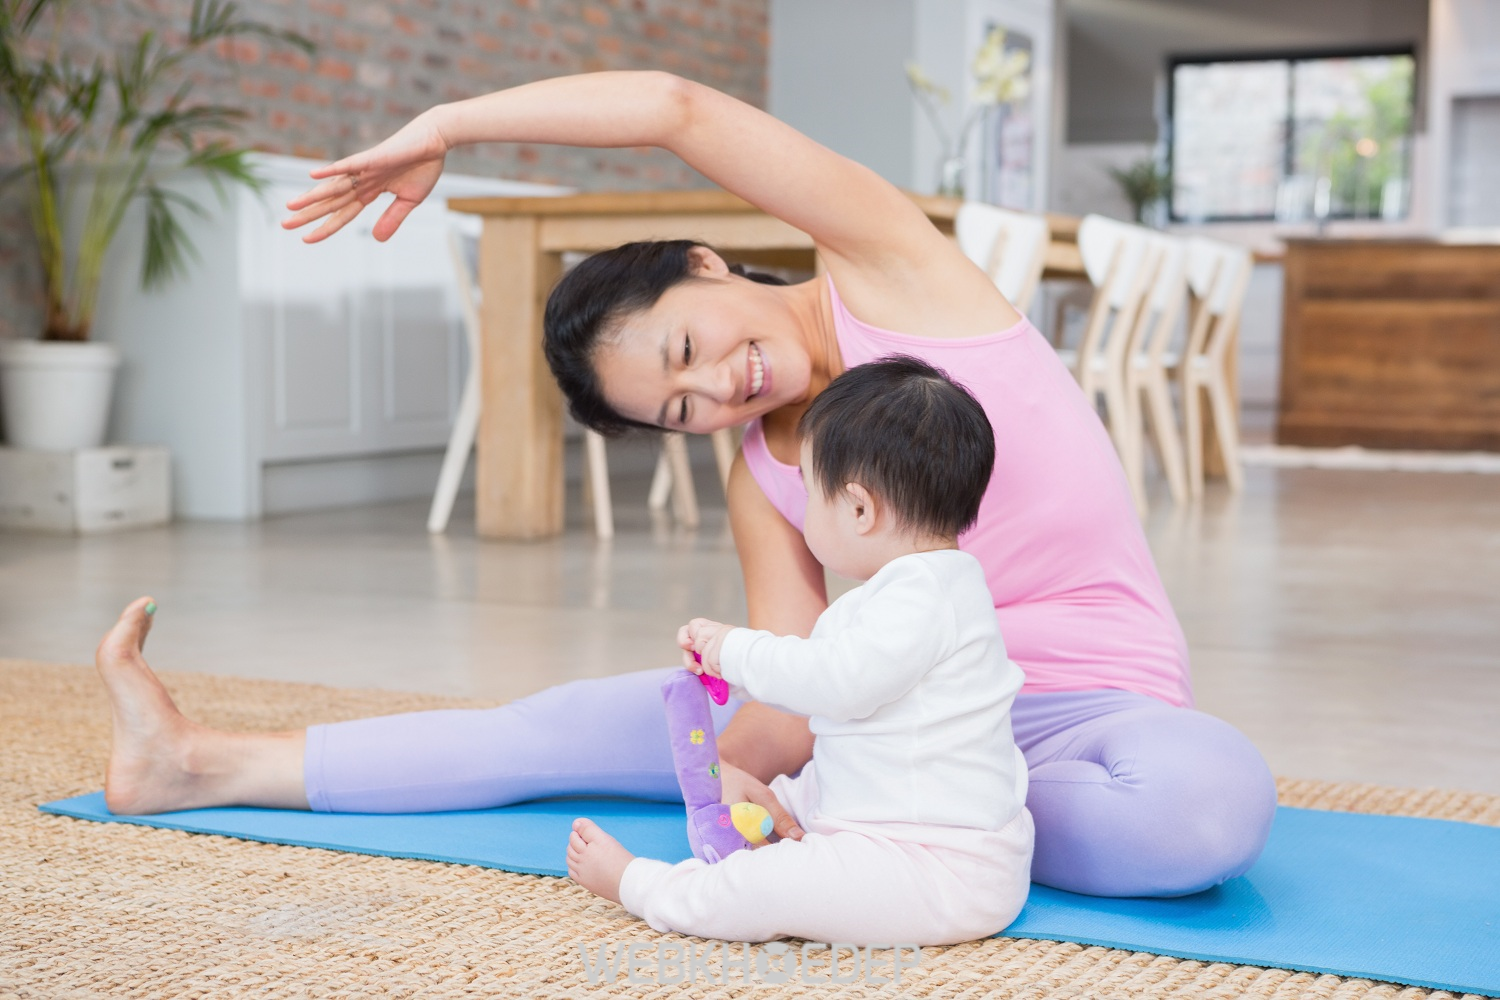 Luyện tập thể dục nhẹ nhàng, thường xuyên tại nhà để tiêu tốn calo, giữ sức khỏe và độ dẻo dai cho cơ thể mẹ